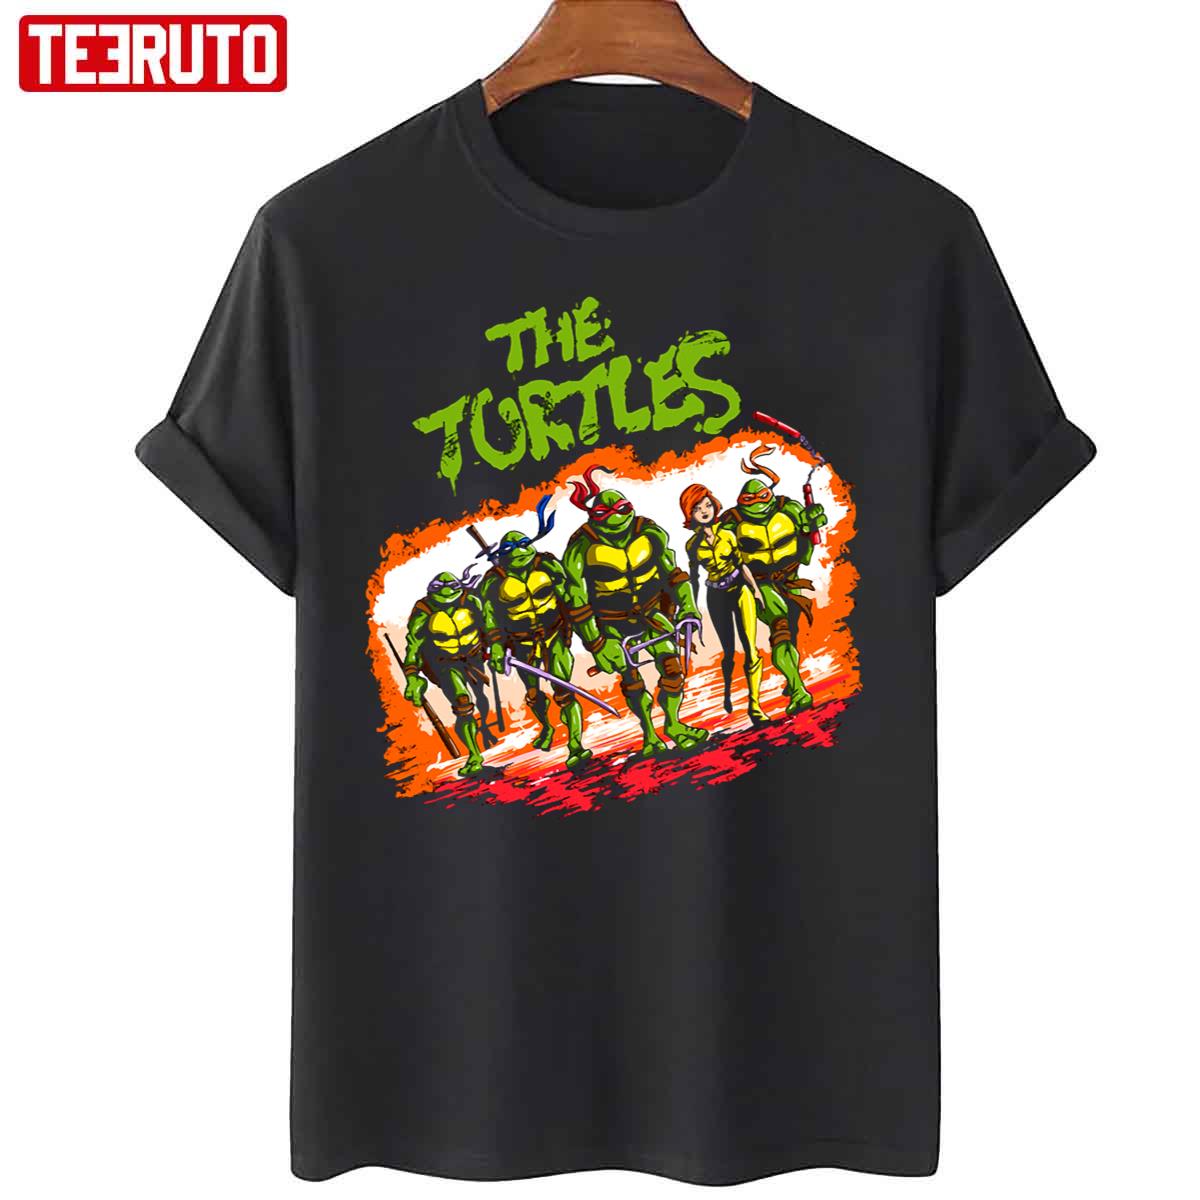 Vintage The Ninja Turtles Superhero Cartoon Movie Unisex T-Shirt